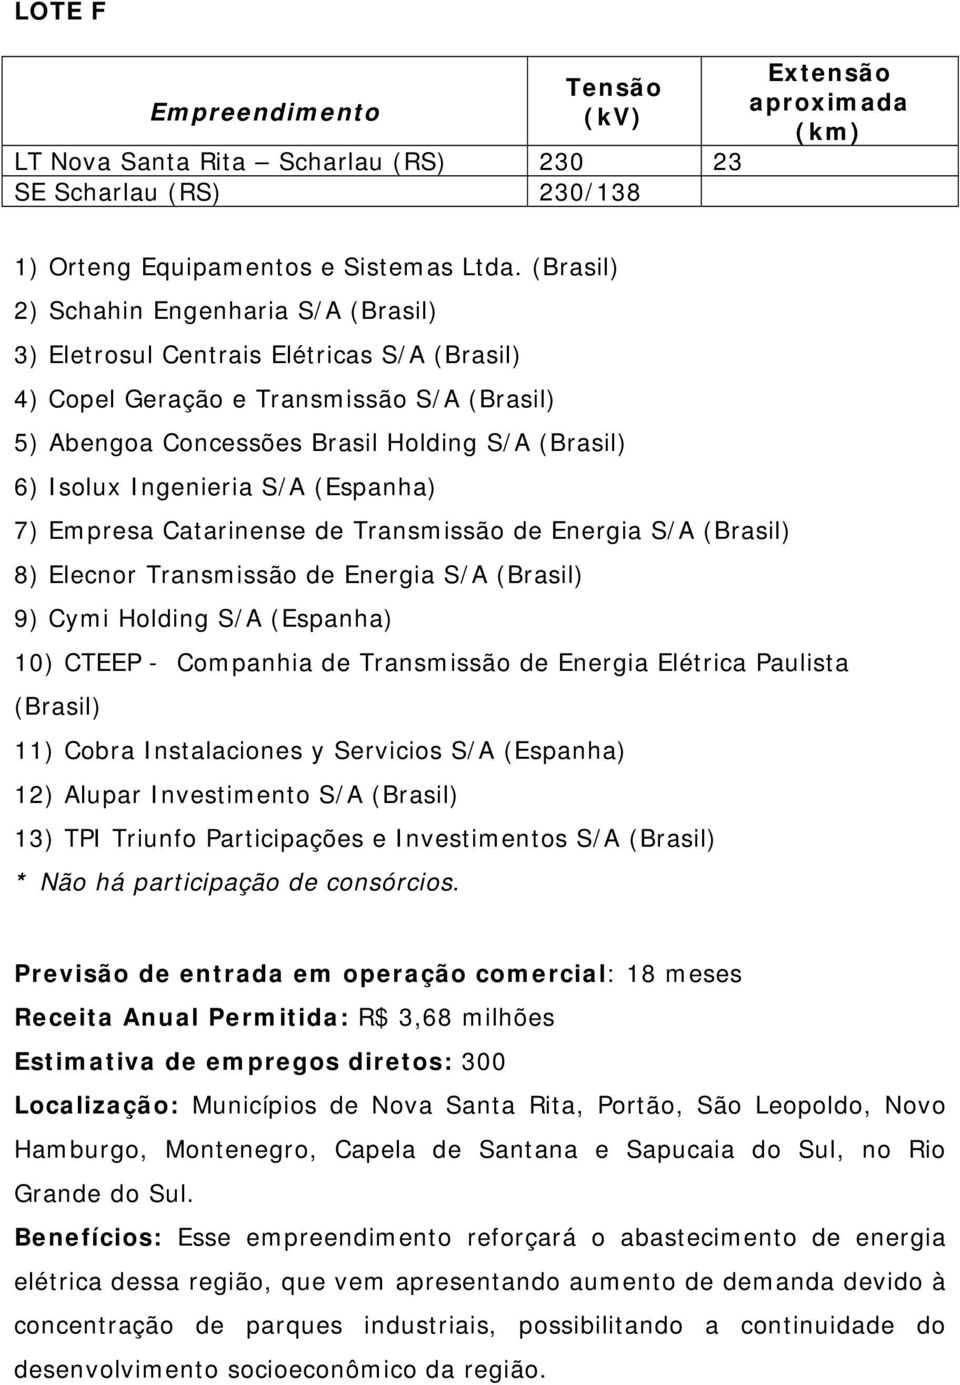 Holding S/A (Espanha) 10) CTEEP - Companhia de Transmissão de Energia Elétrica Paulista (Brasil) 11) Cobra Instalaciones y Servicios S/A (Espanha) 12) Alupar Investimento S/A (Brasil) 13) TPI Triunfo